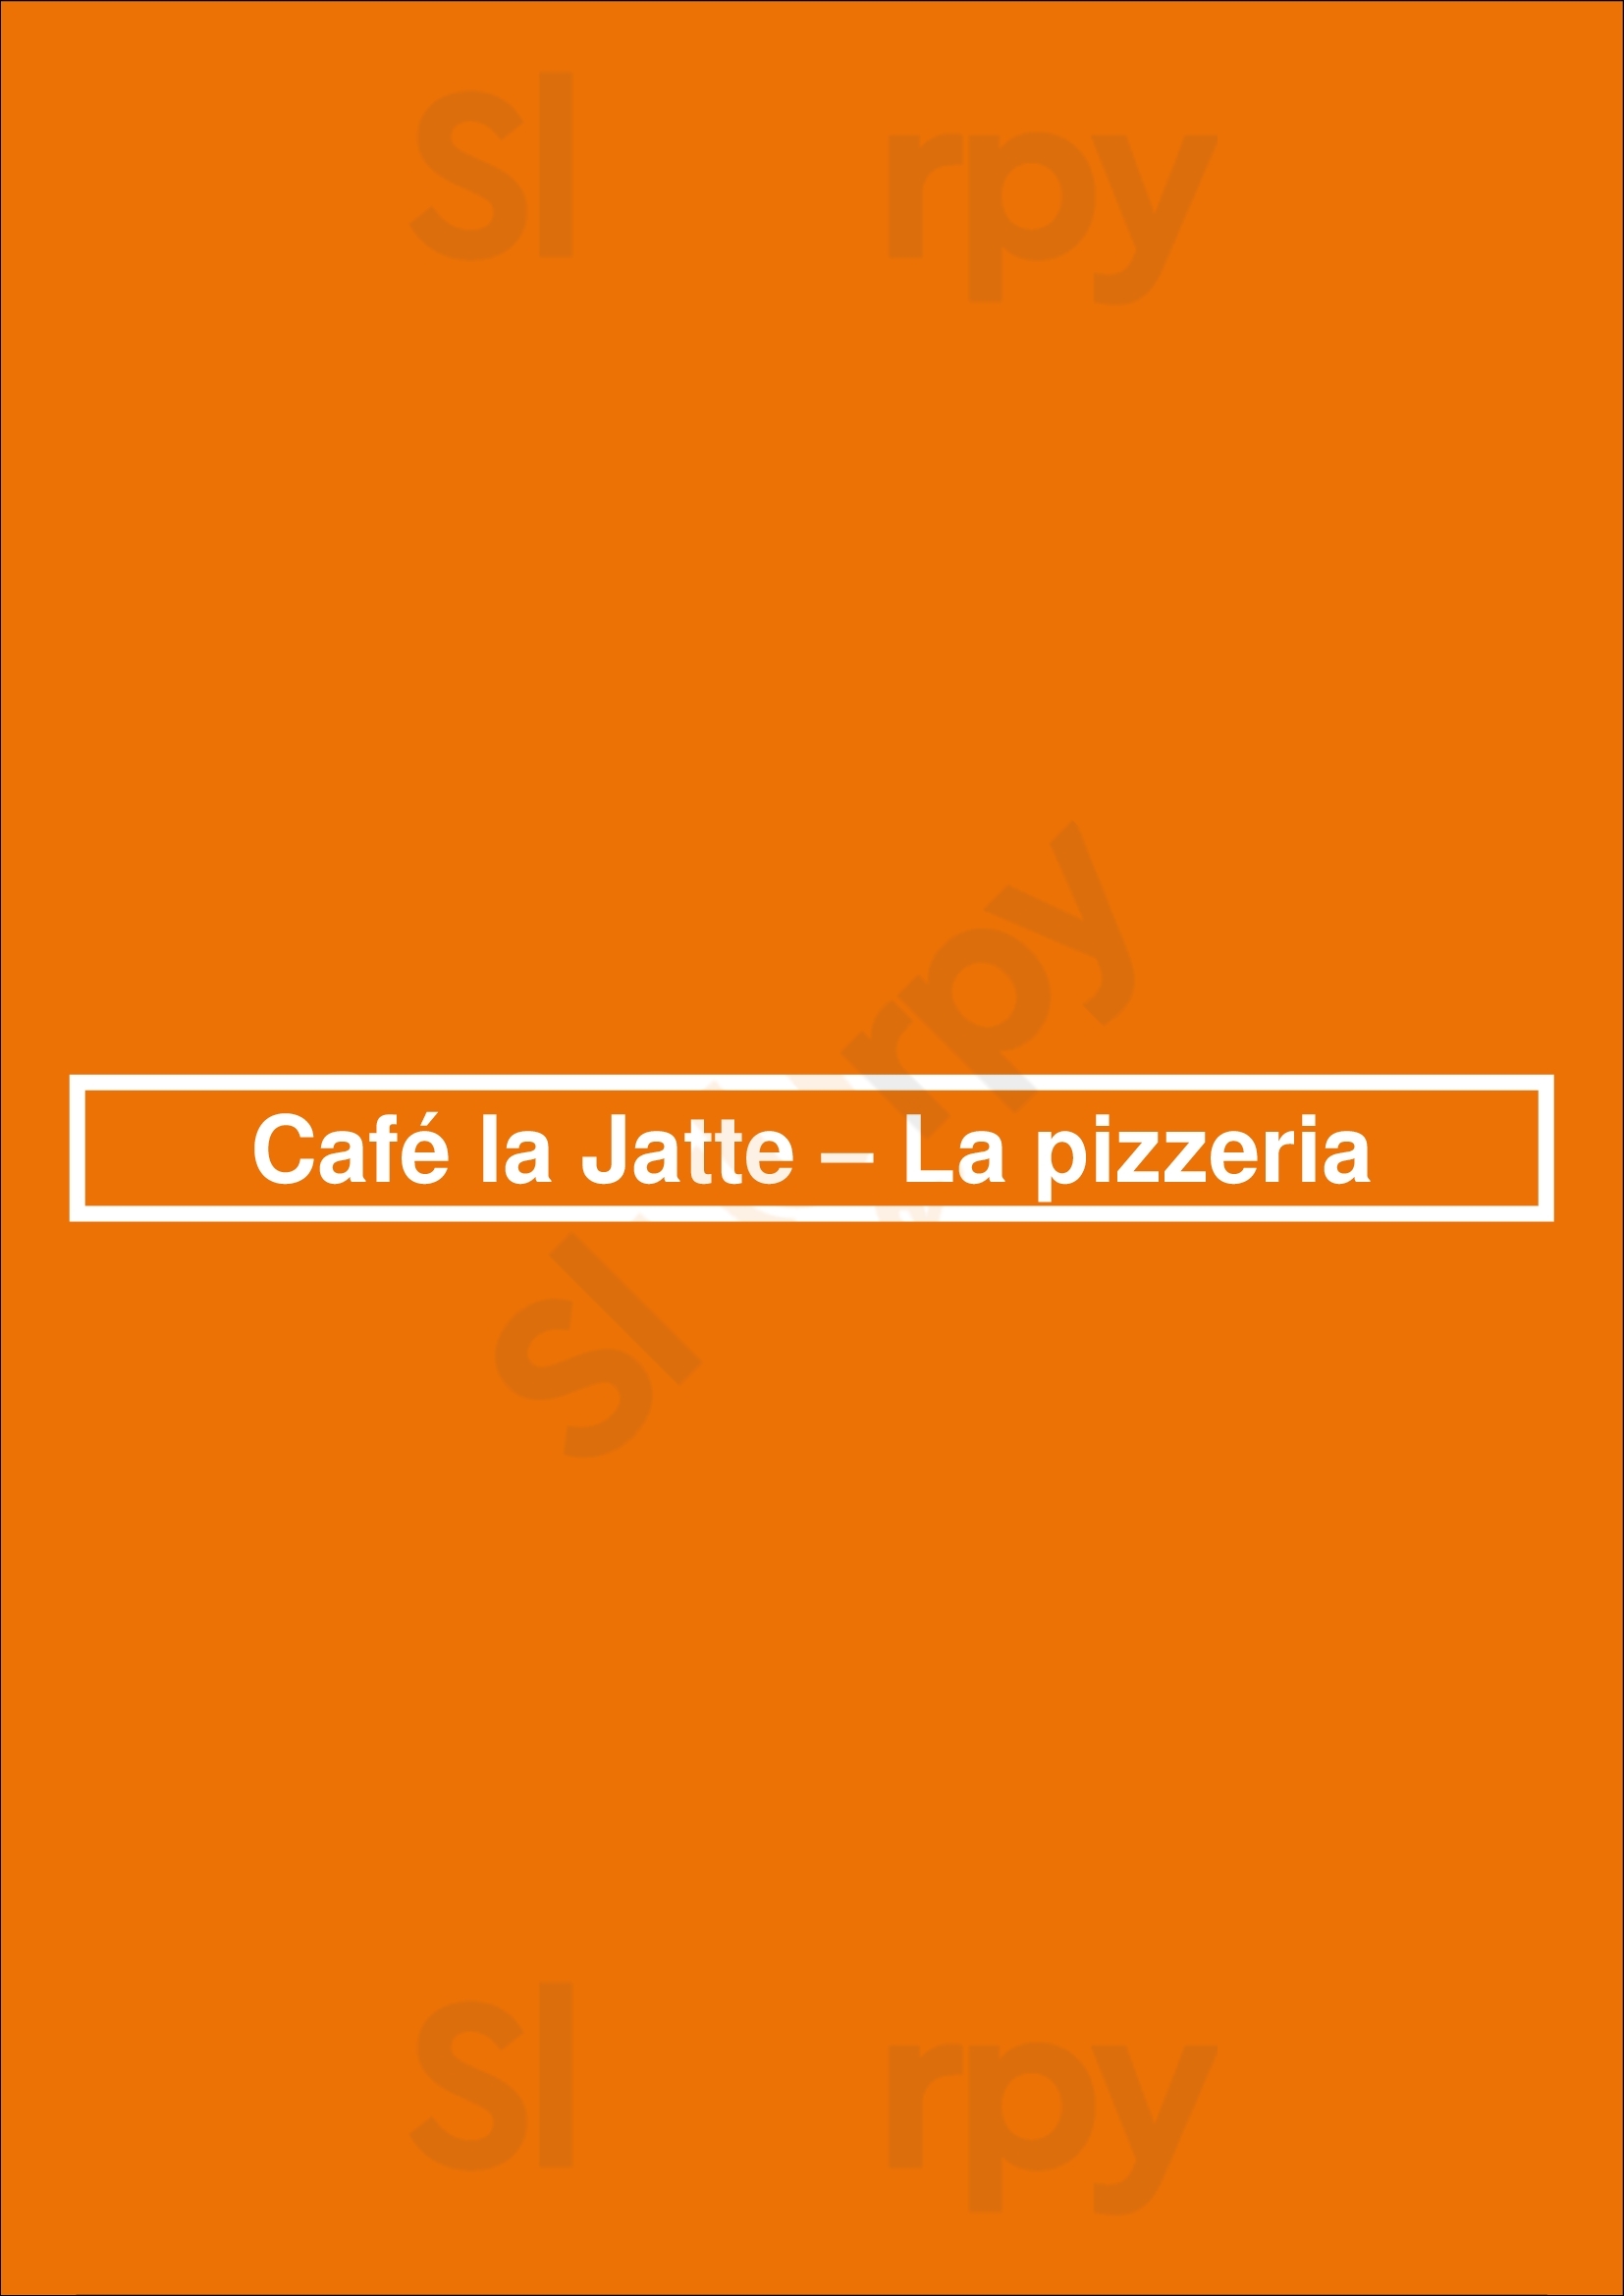 Café La Jatte – La Pizzeria Neuilly-sur-Seine Menu - 1